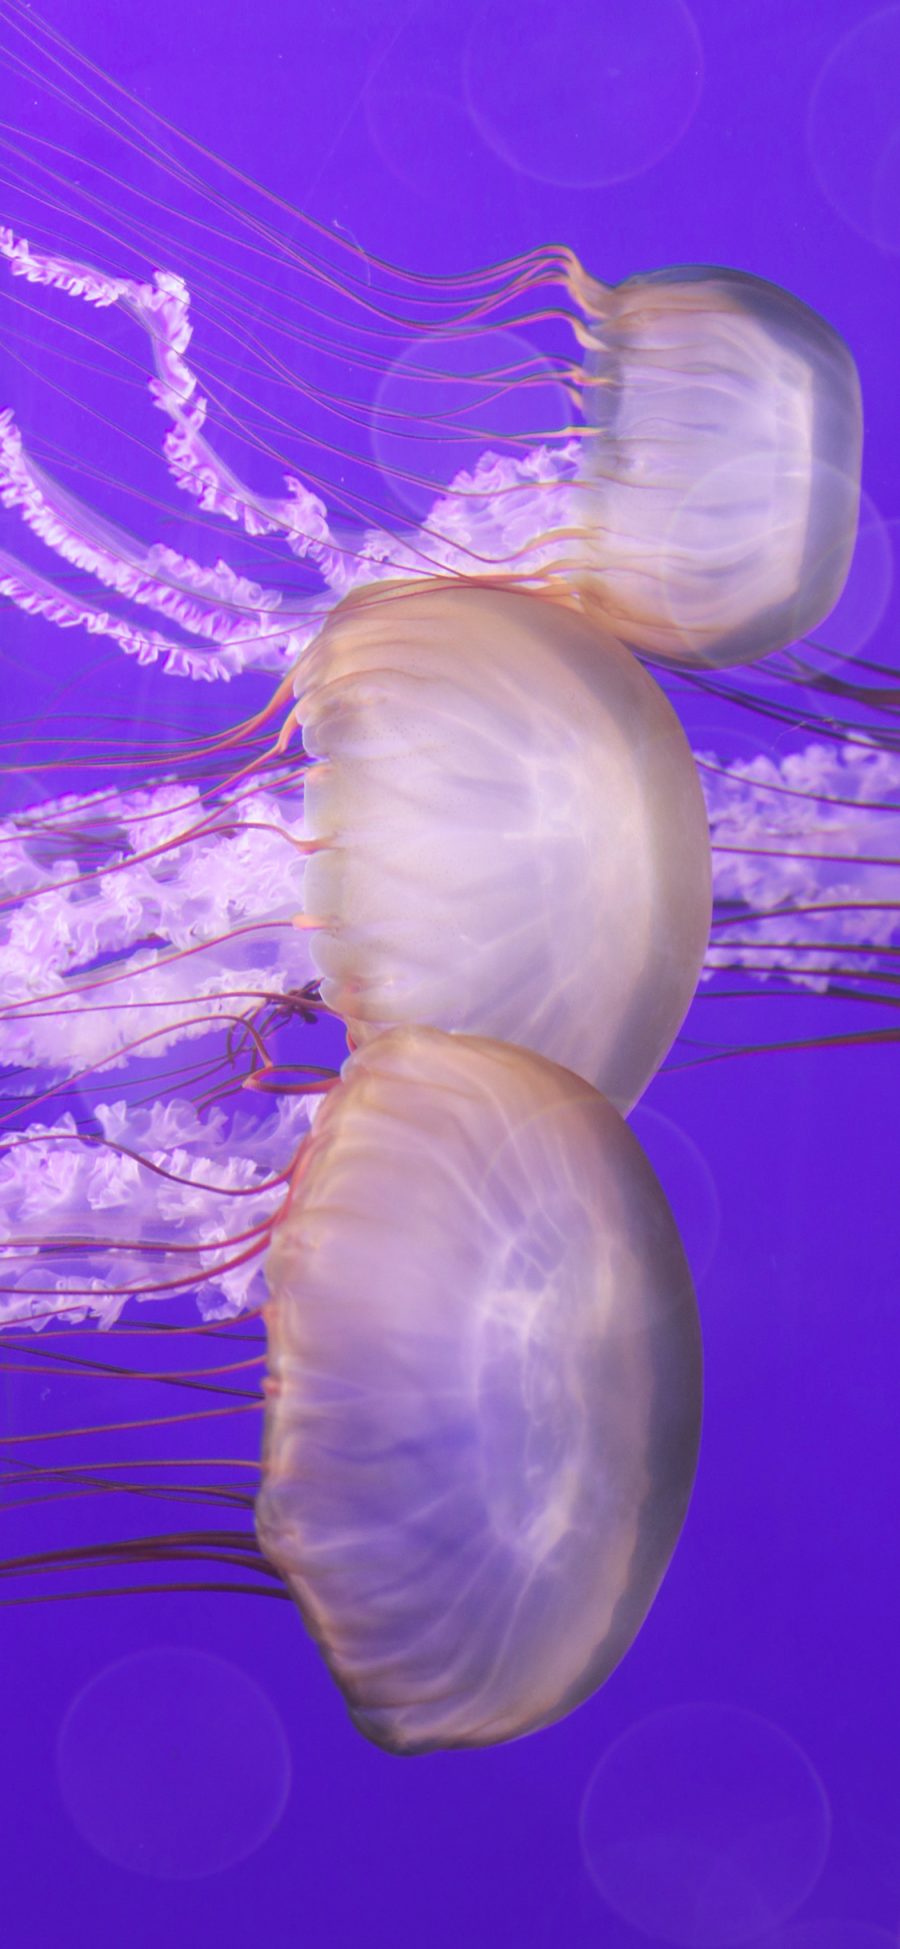 [2436×1125]水母 海洋生物 紫色 透明 游动 苹果手机壁纸图片